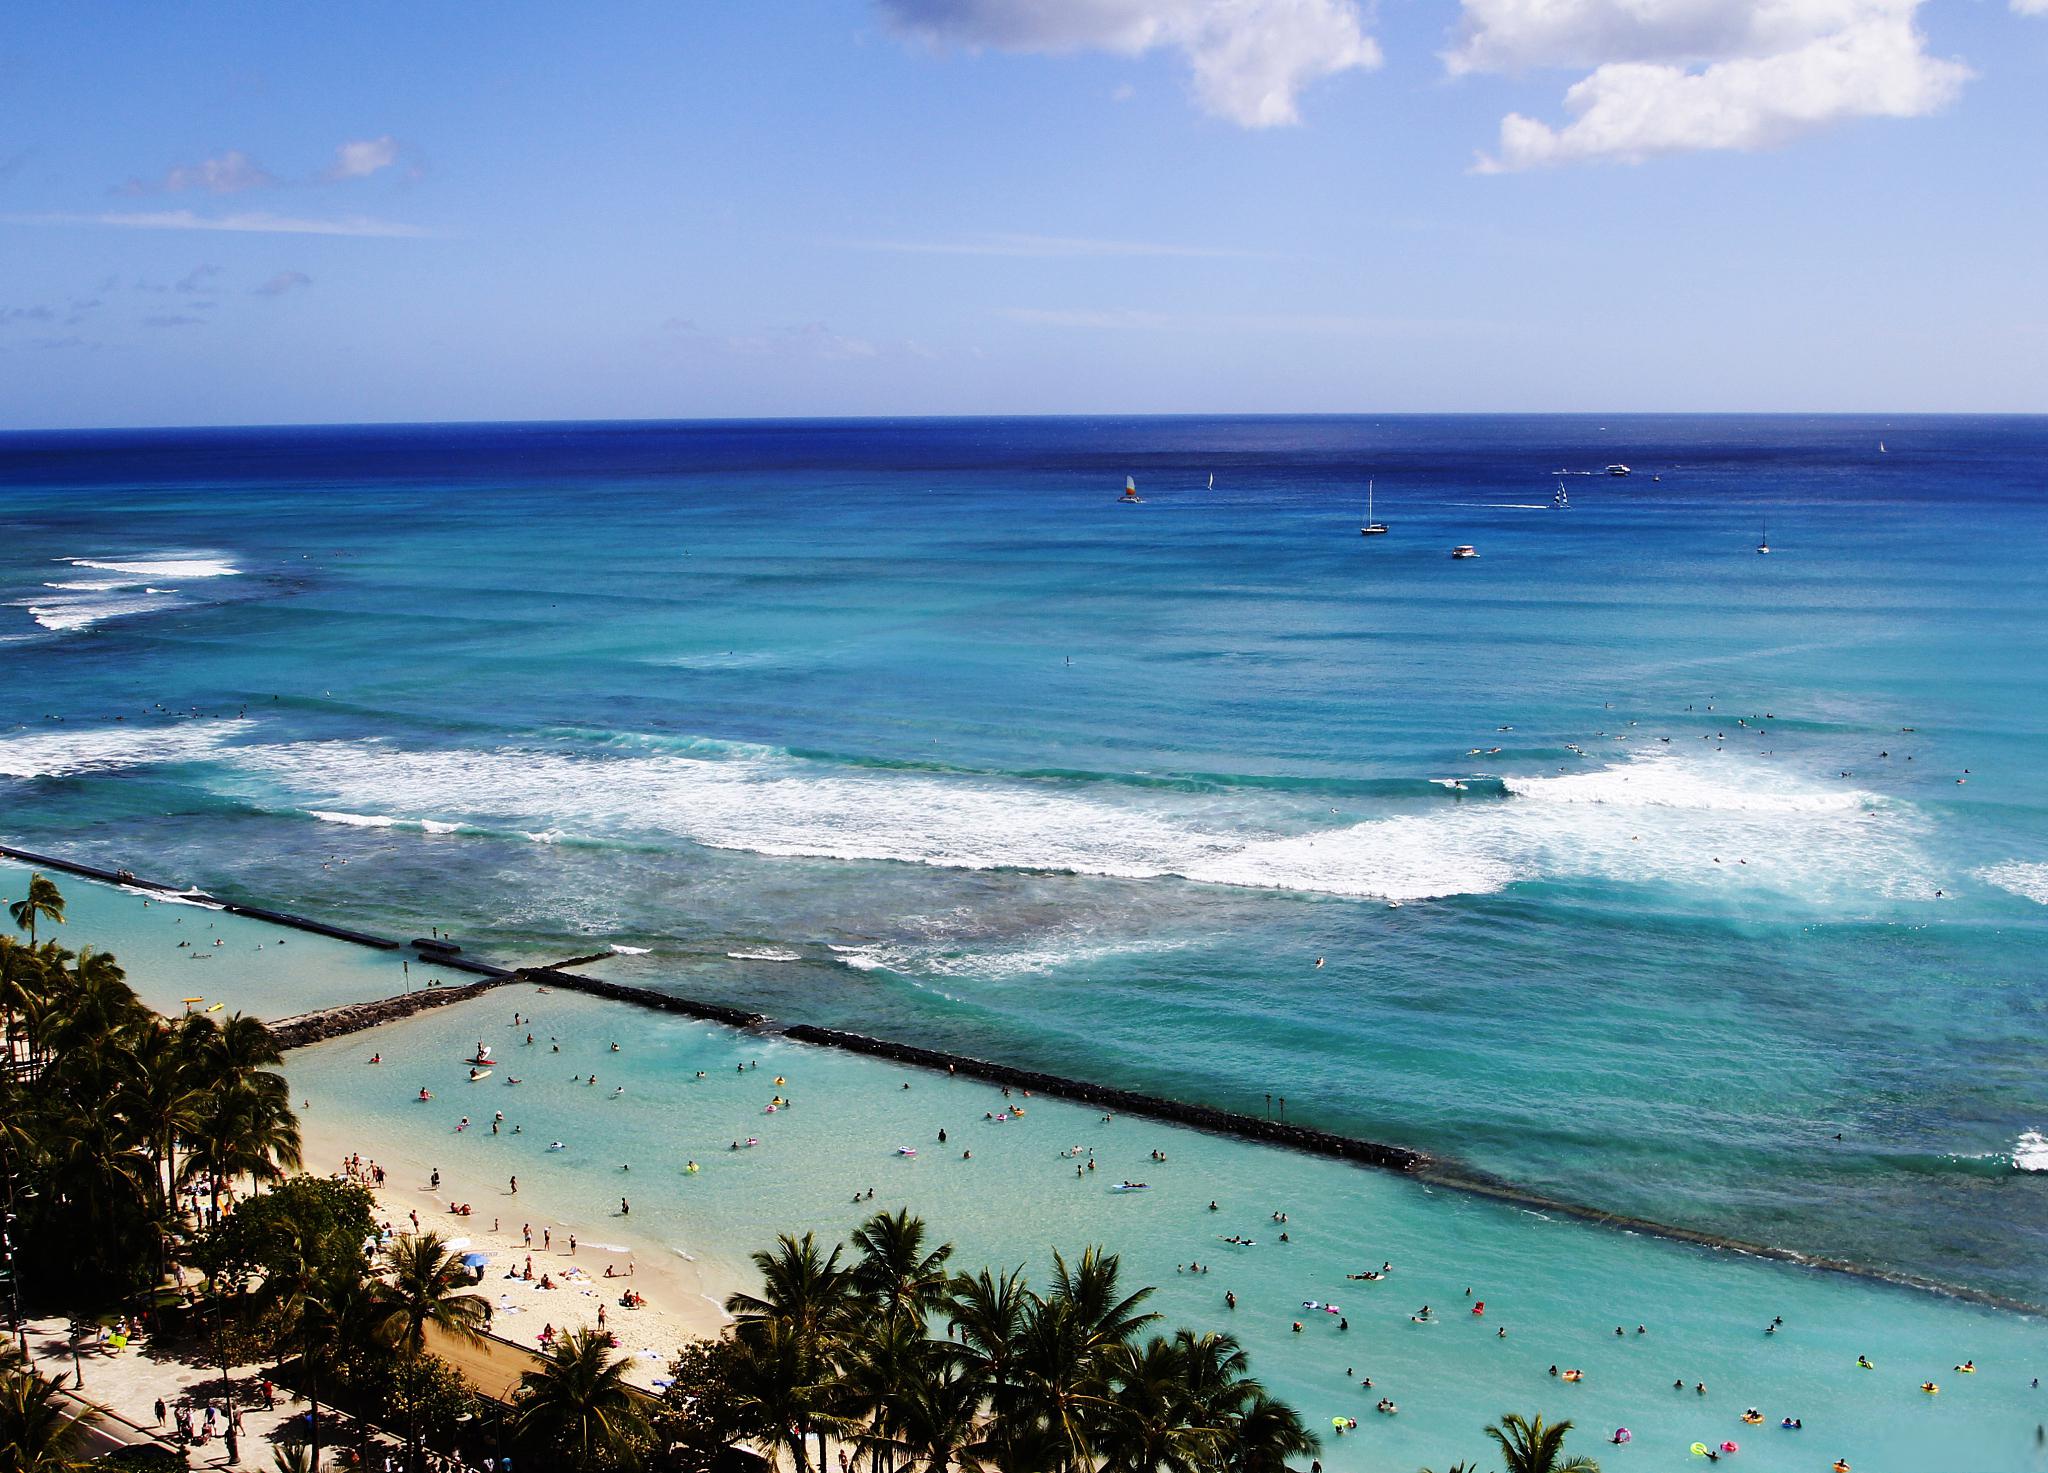 夏威夷岛旅游攻略 夏威夷岛是夏威夷群岛中最大的岛屿,也是世界上排名